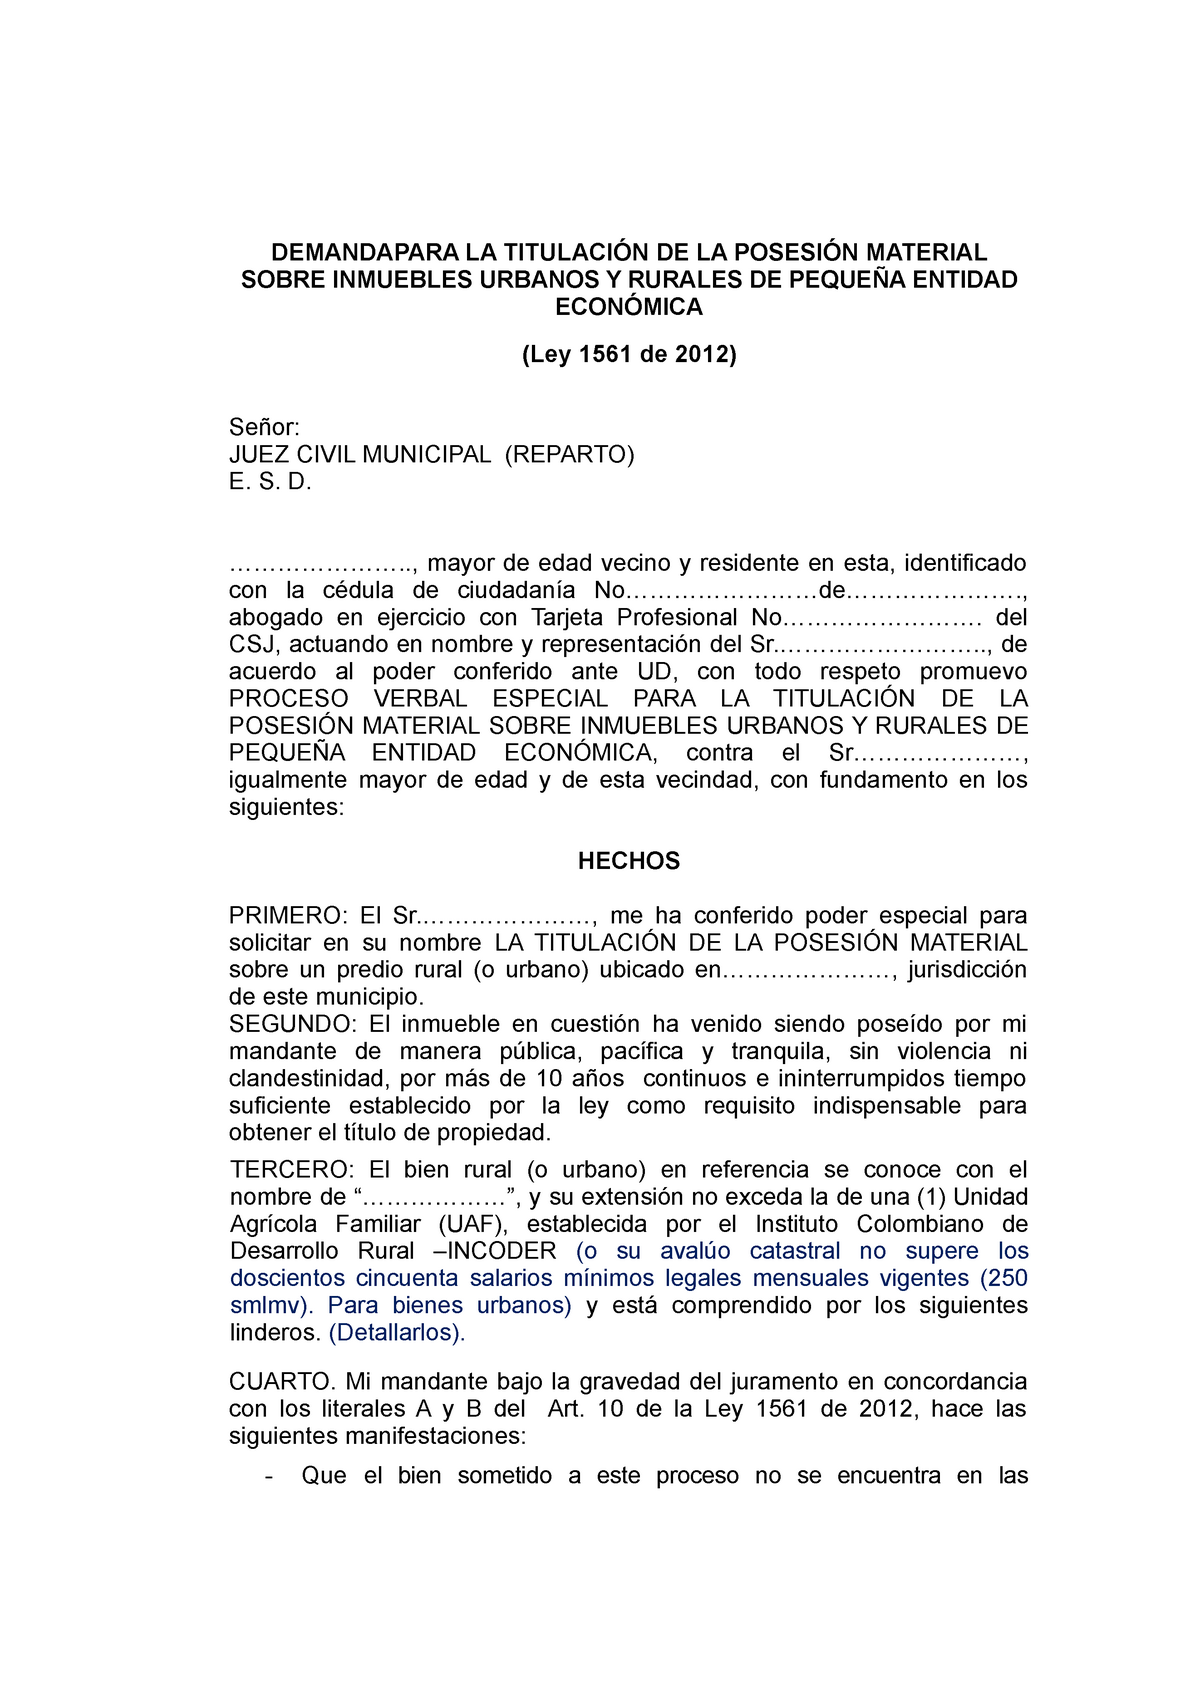 Modelo Demanda Saneamiento Titulacion Inmueble Ley 1561 de 2012 en Colombia